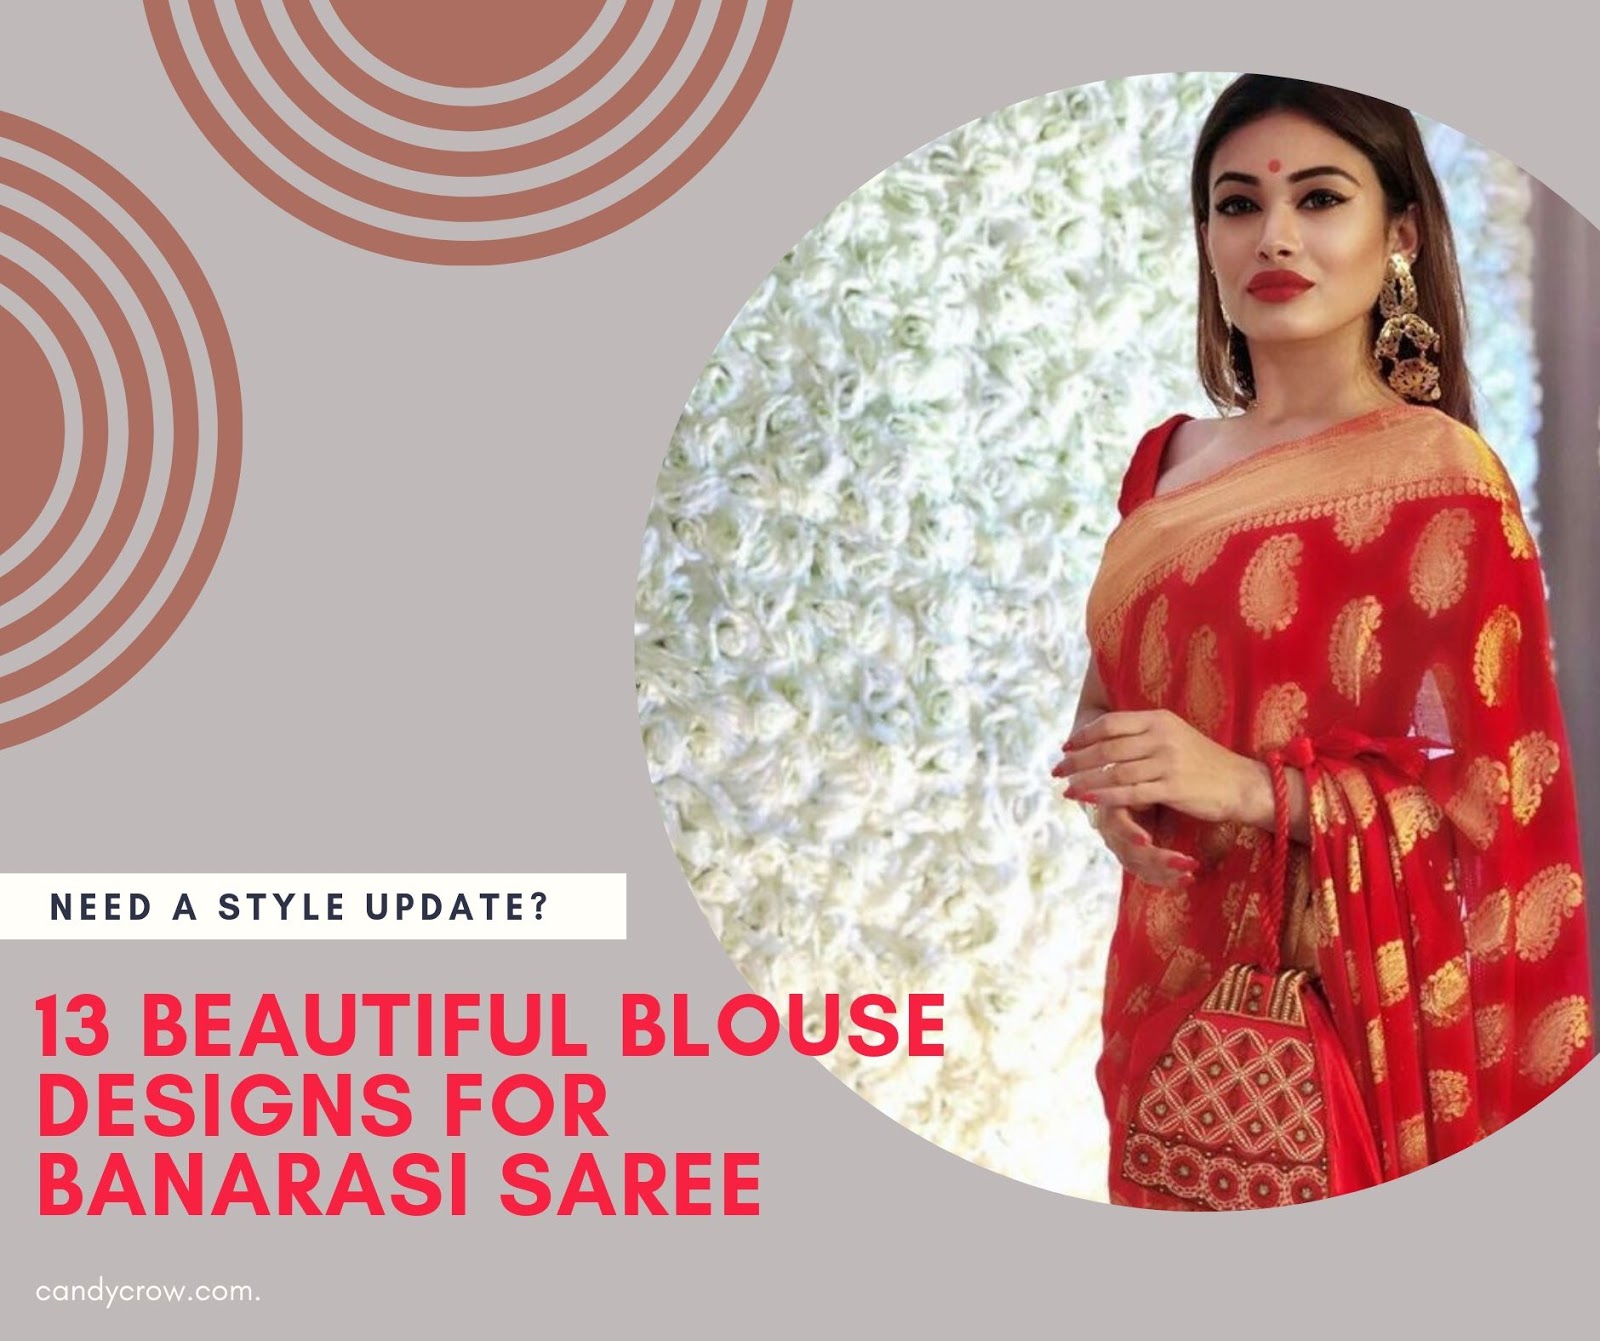 13 Beautiful Blouse Designs For Banarasi Saree Candy Crow